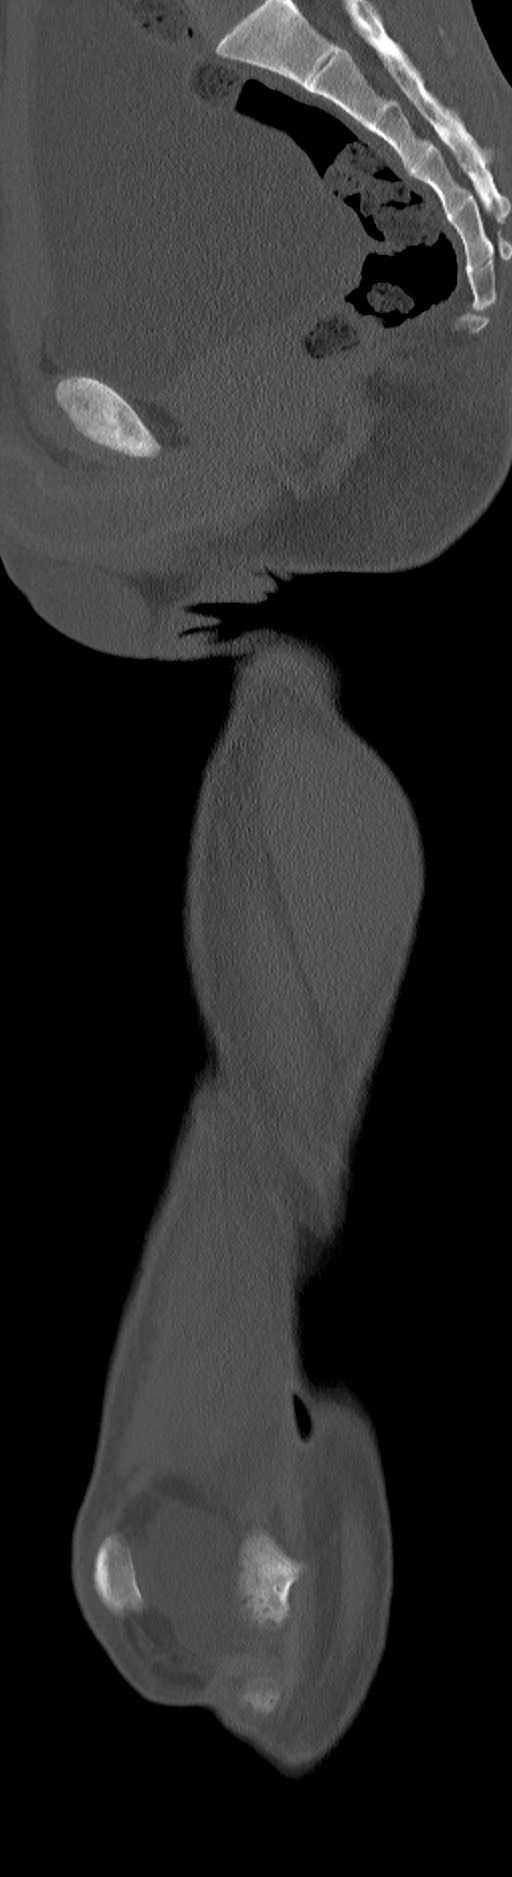 Chronic osteomyelitis (with sequestrum) (Radiopaedia 74813-85822 C 59).jpg